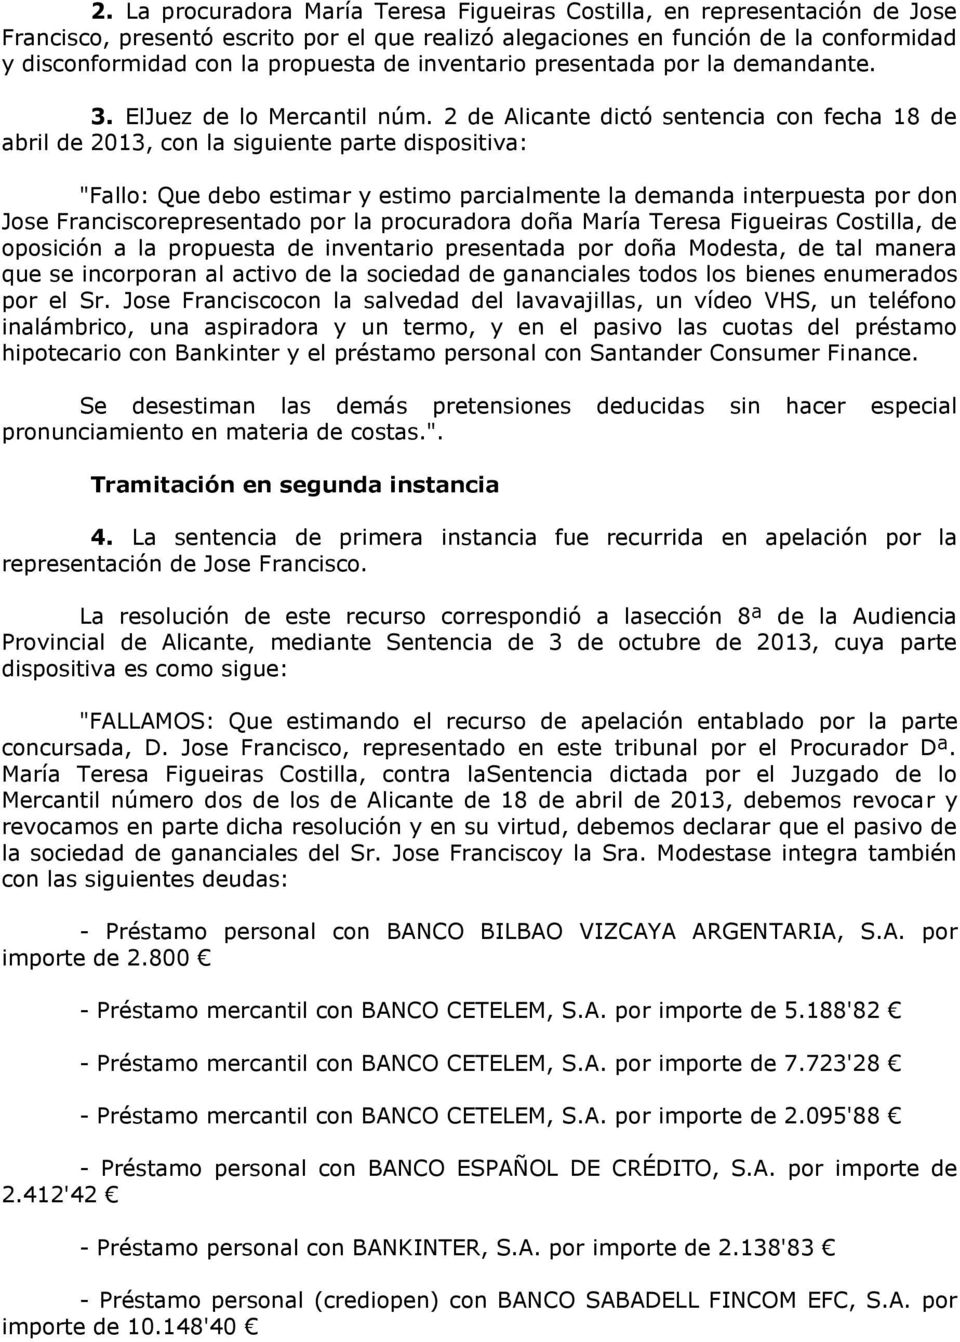 2 de Alicante dictó sentencia con fecha 18 de abril de 2013, con la siguiente parte dispositiva: "Fallo: Que debo estimar y estimo parcialmente la demanda interpuesta por don Jose